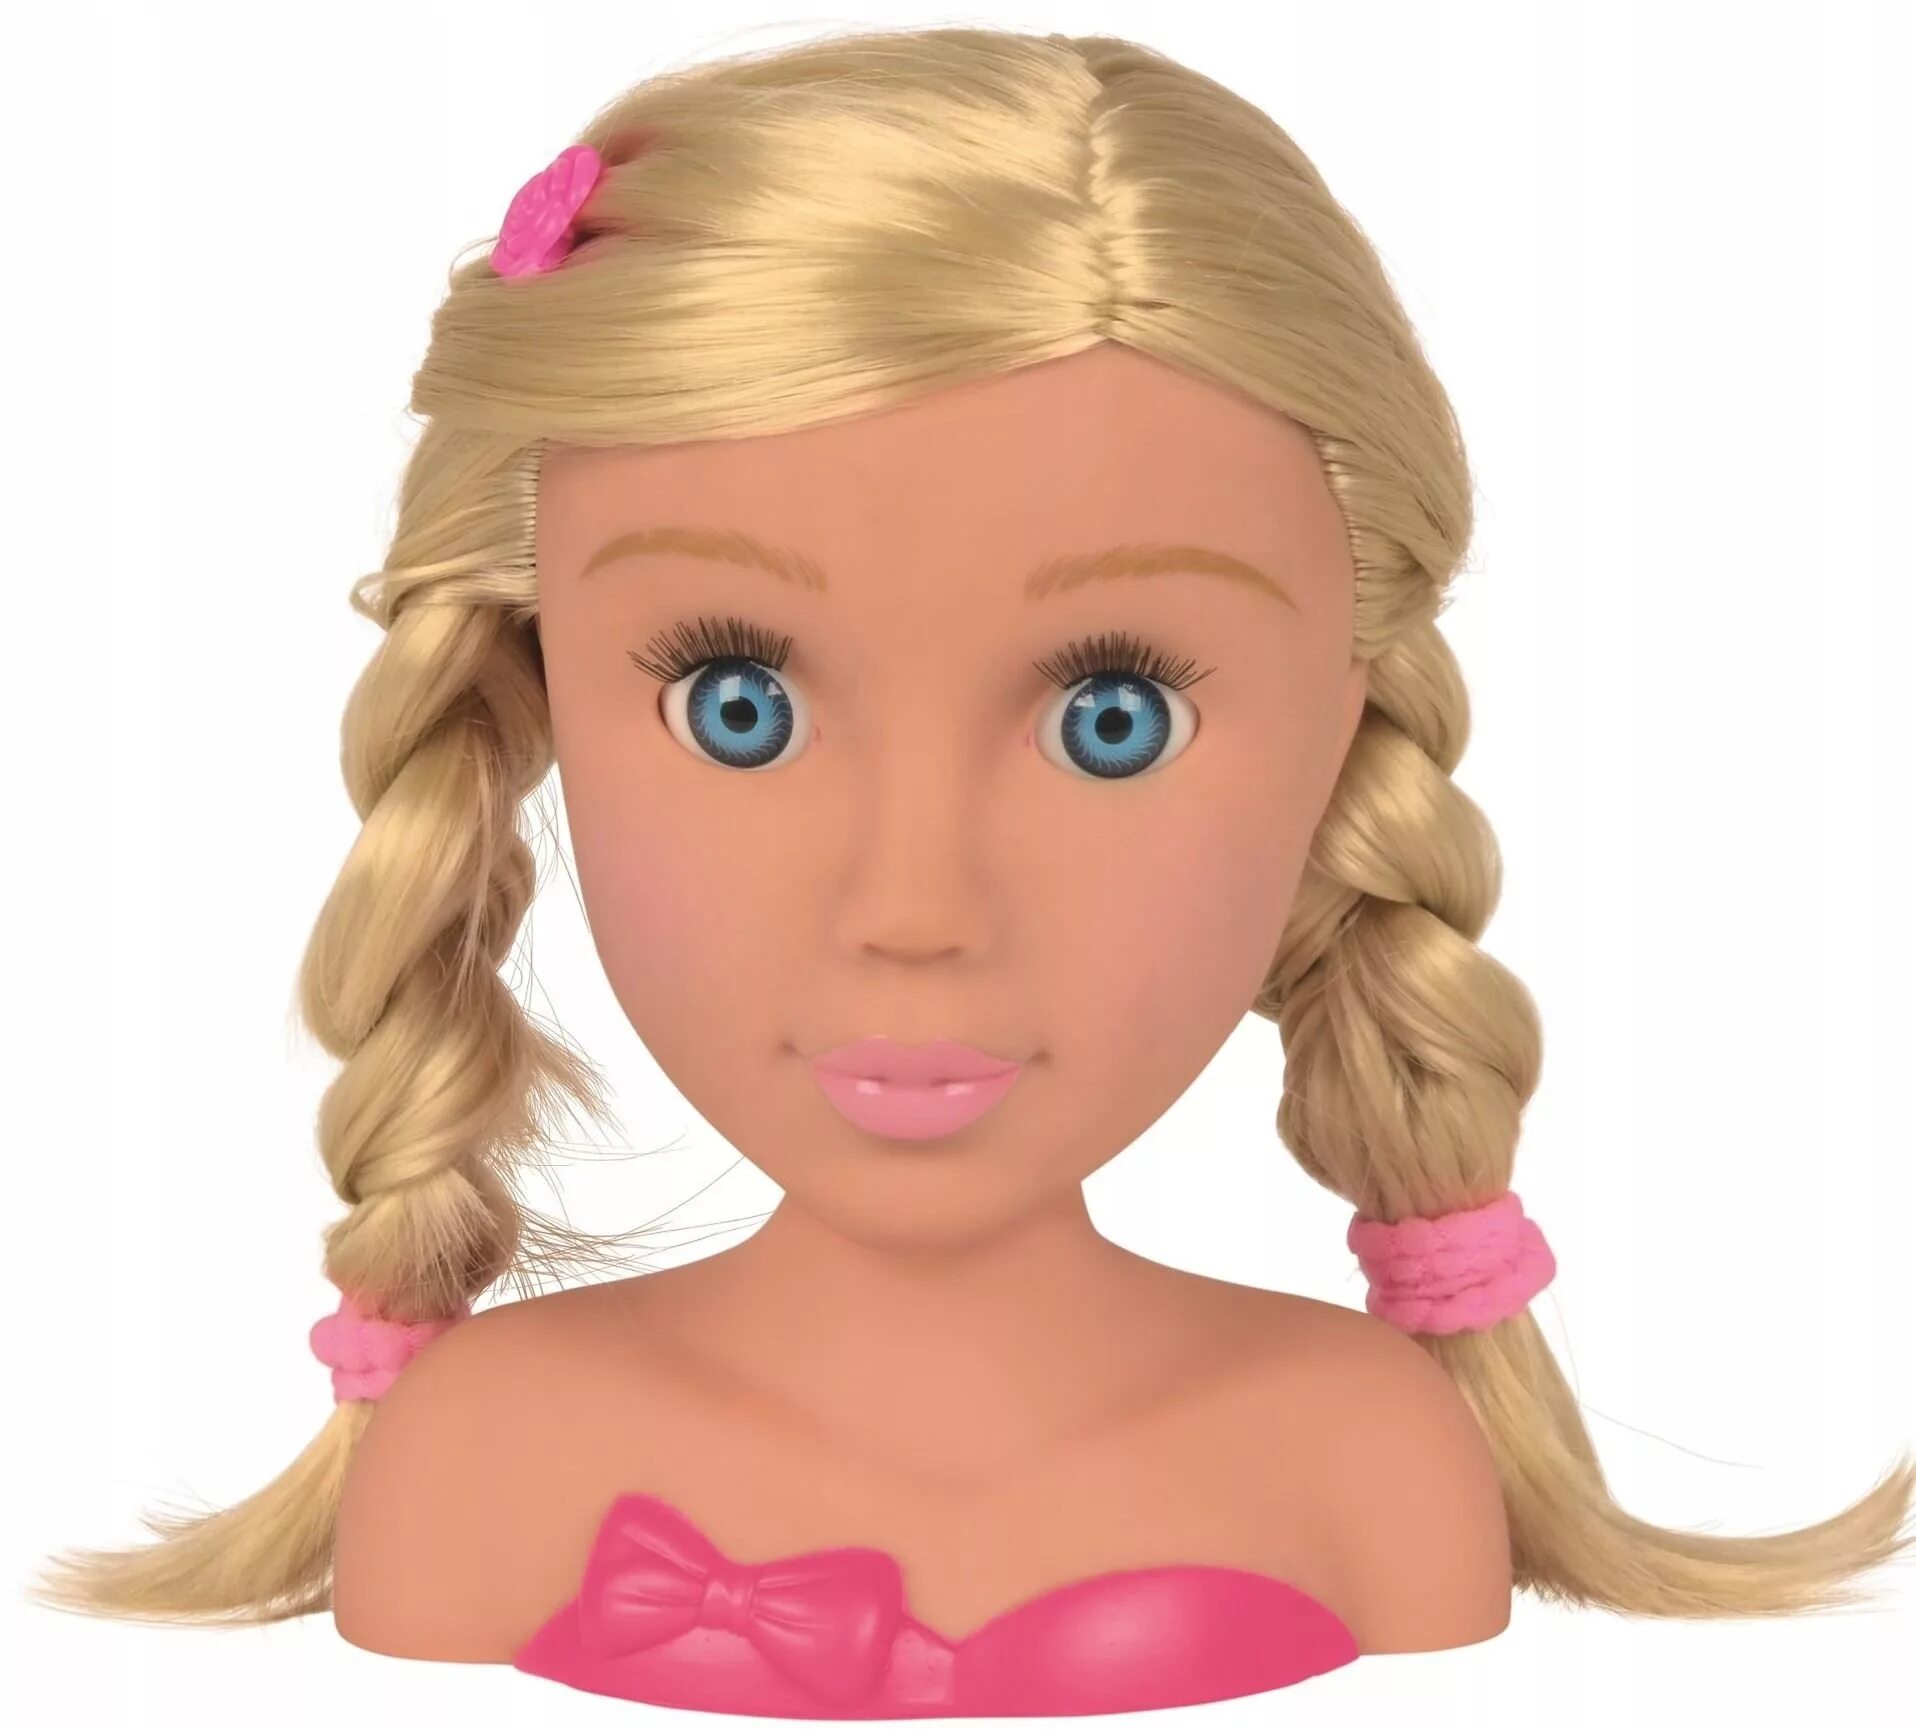 Кукла прически купить. Голова куклы для причесок. Голова для причесок детская. Голова для причесок для девочек. Кукла для причесок и макияжа.